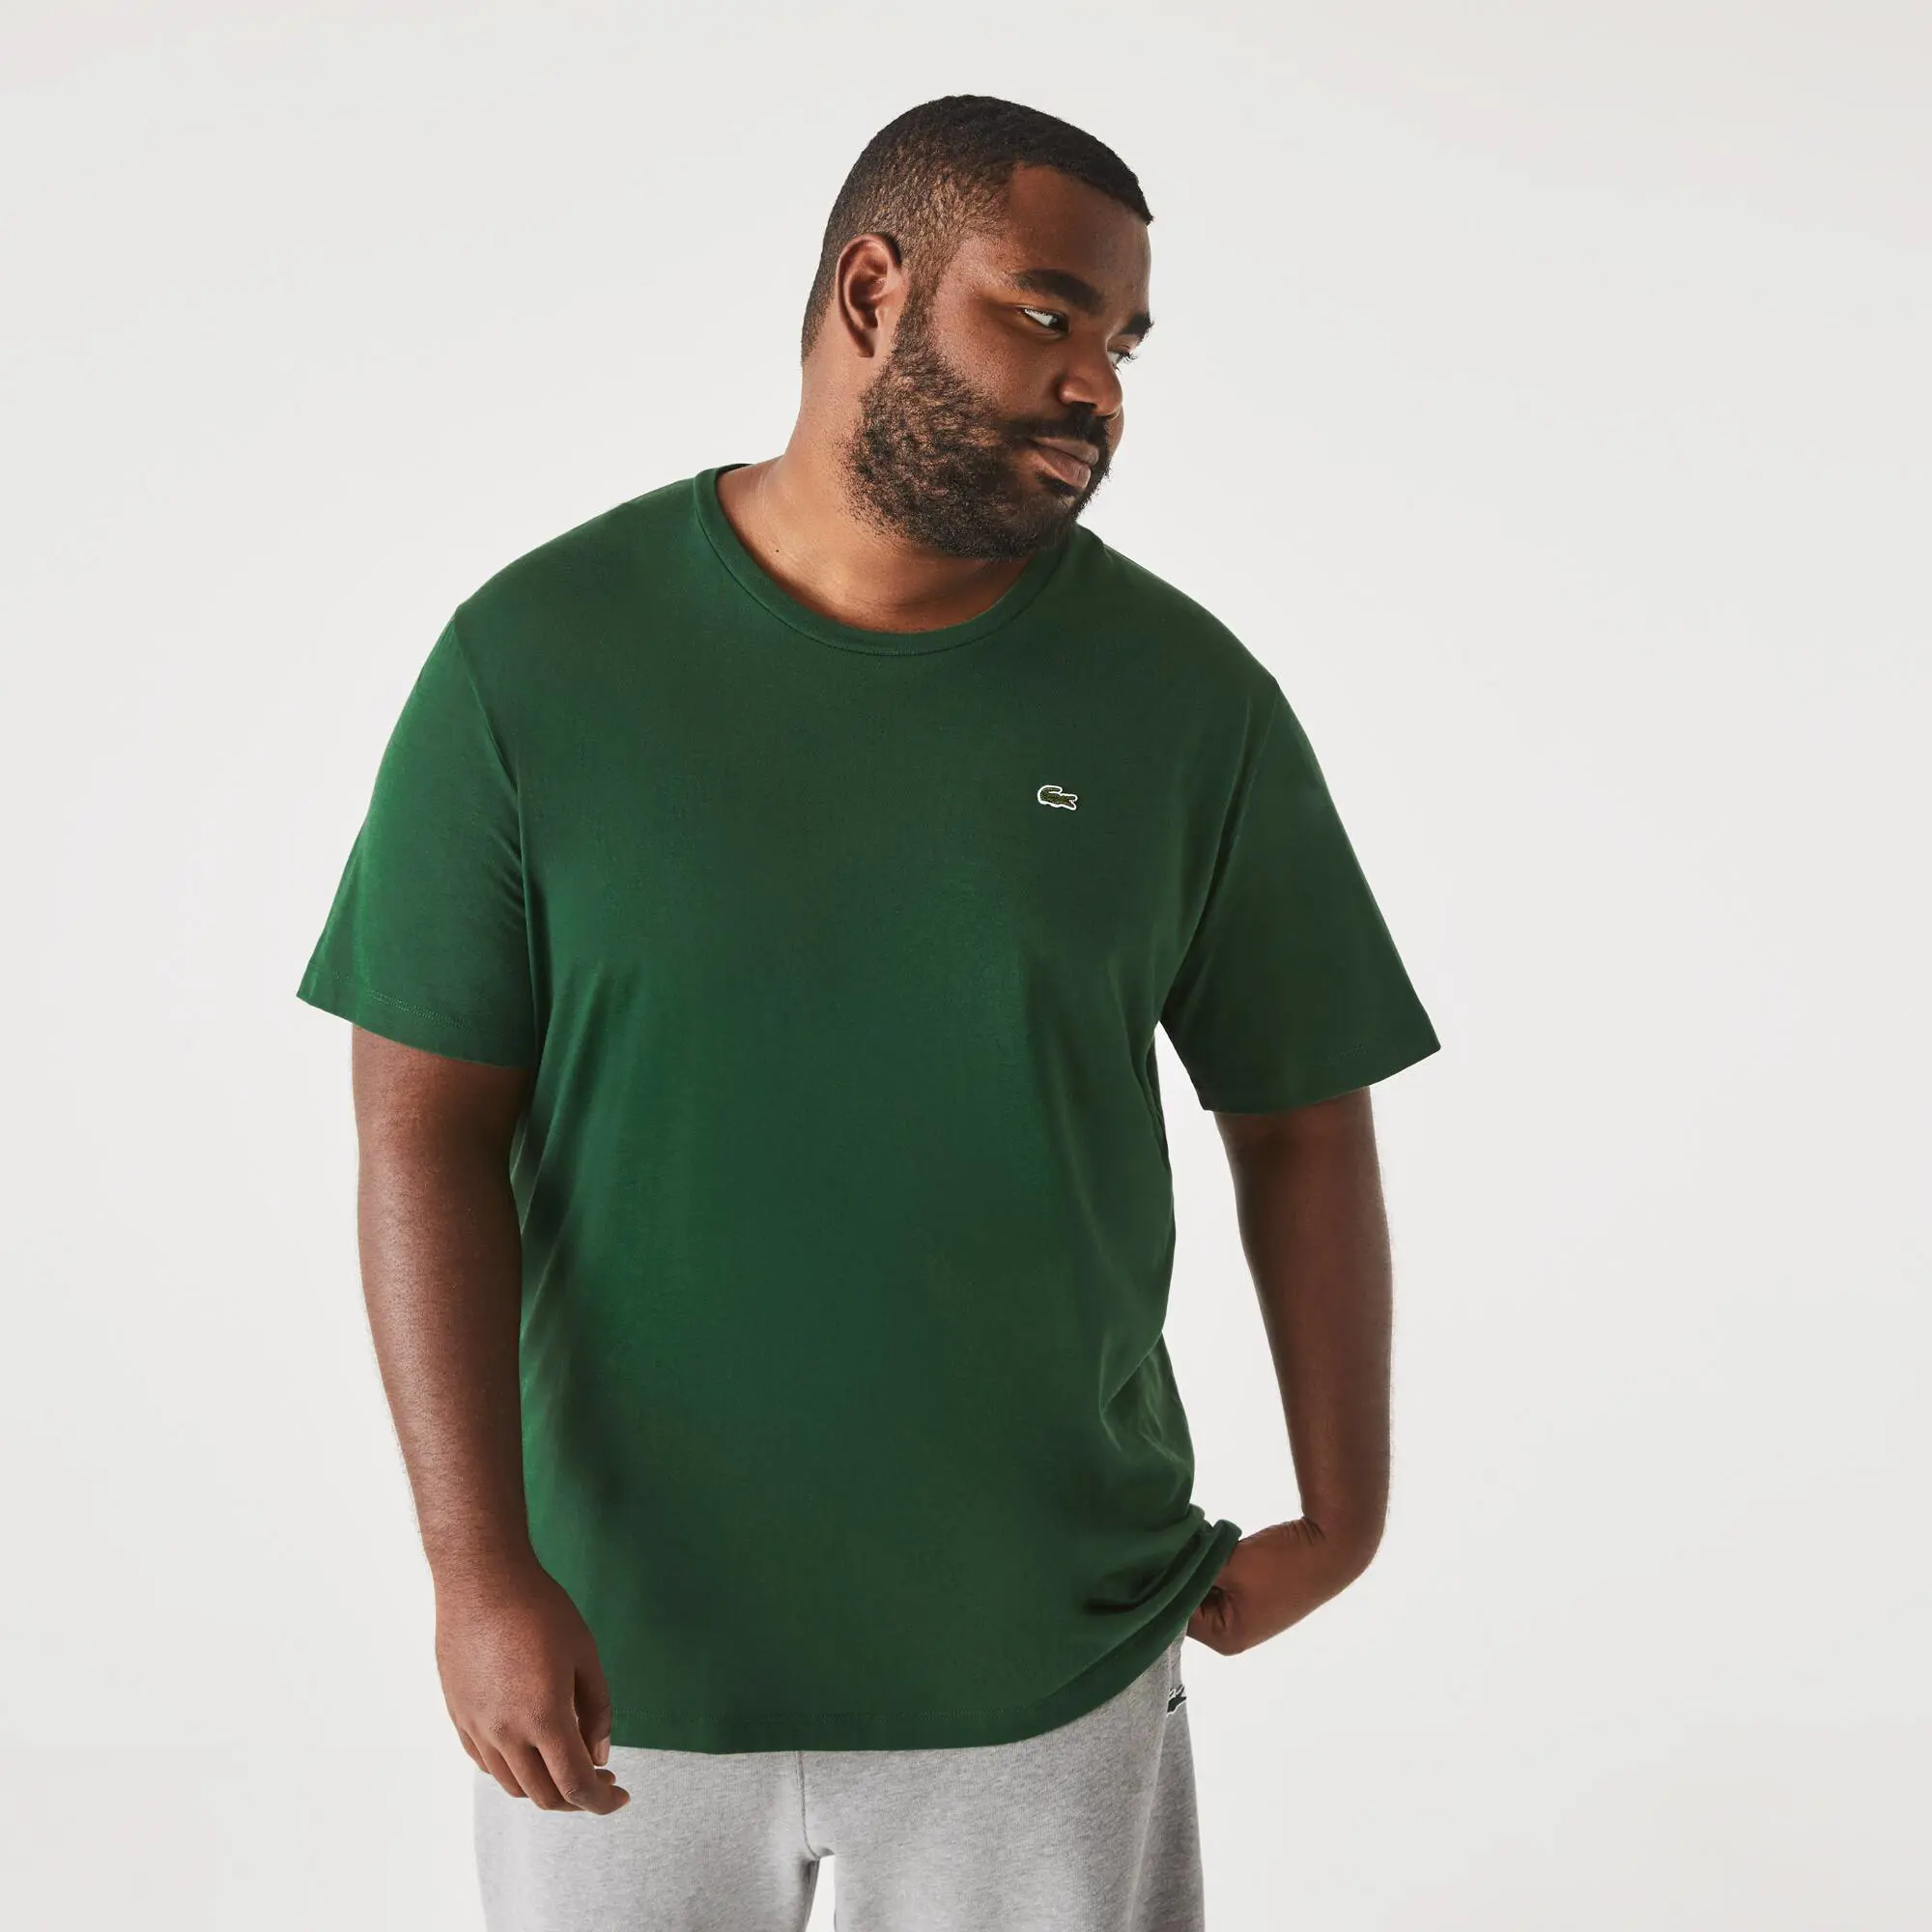 Lacoste Men's Big Fit Crew Neck Cotton Jersey T-Shirt. 1